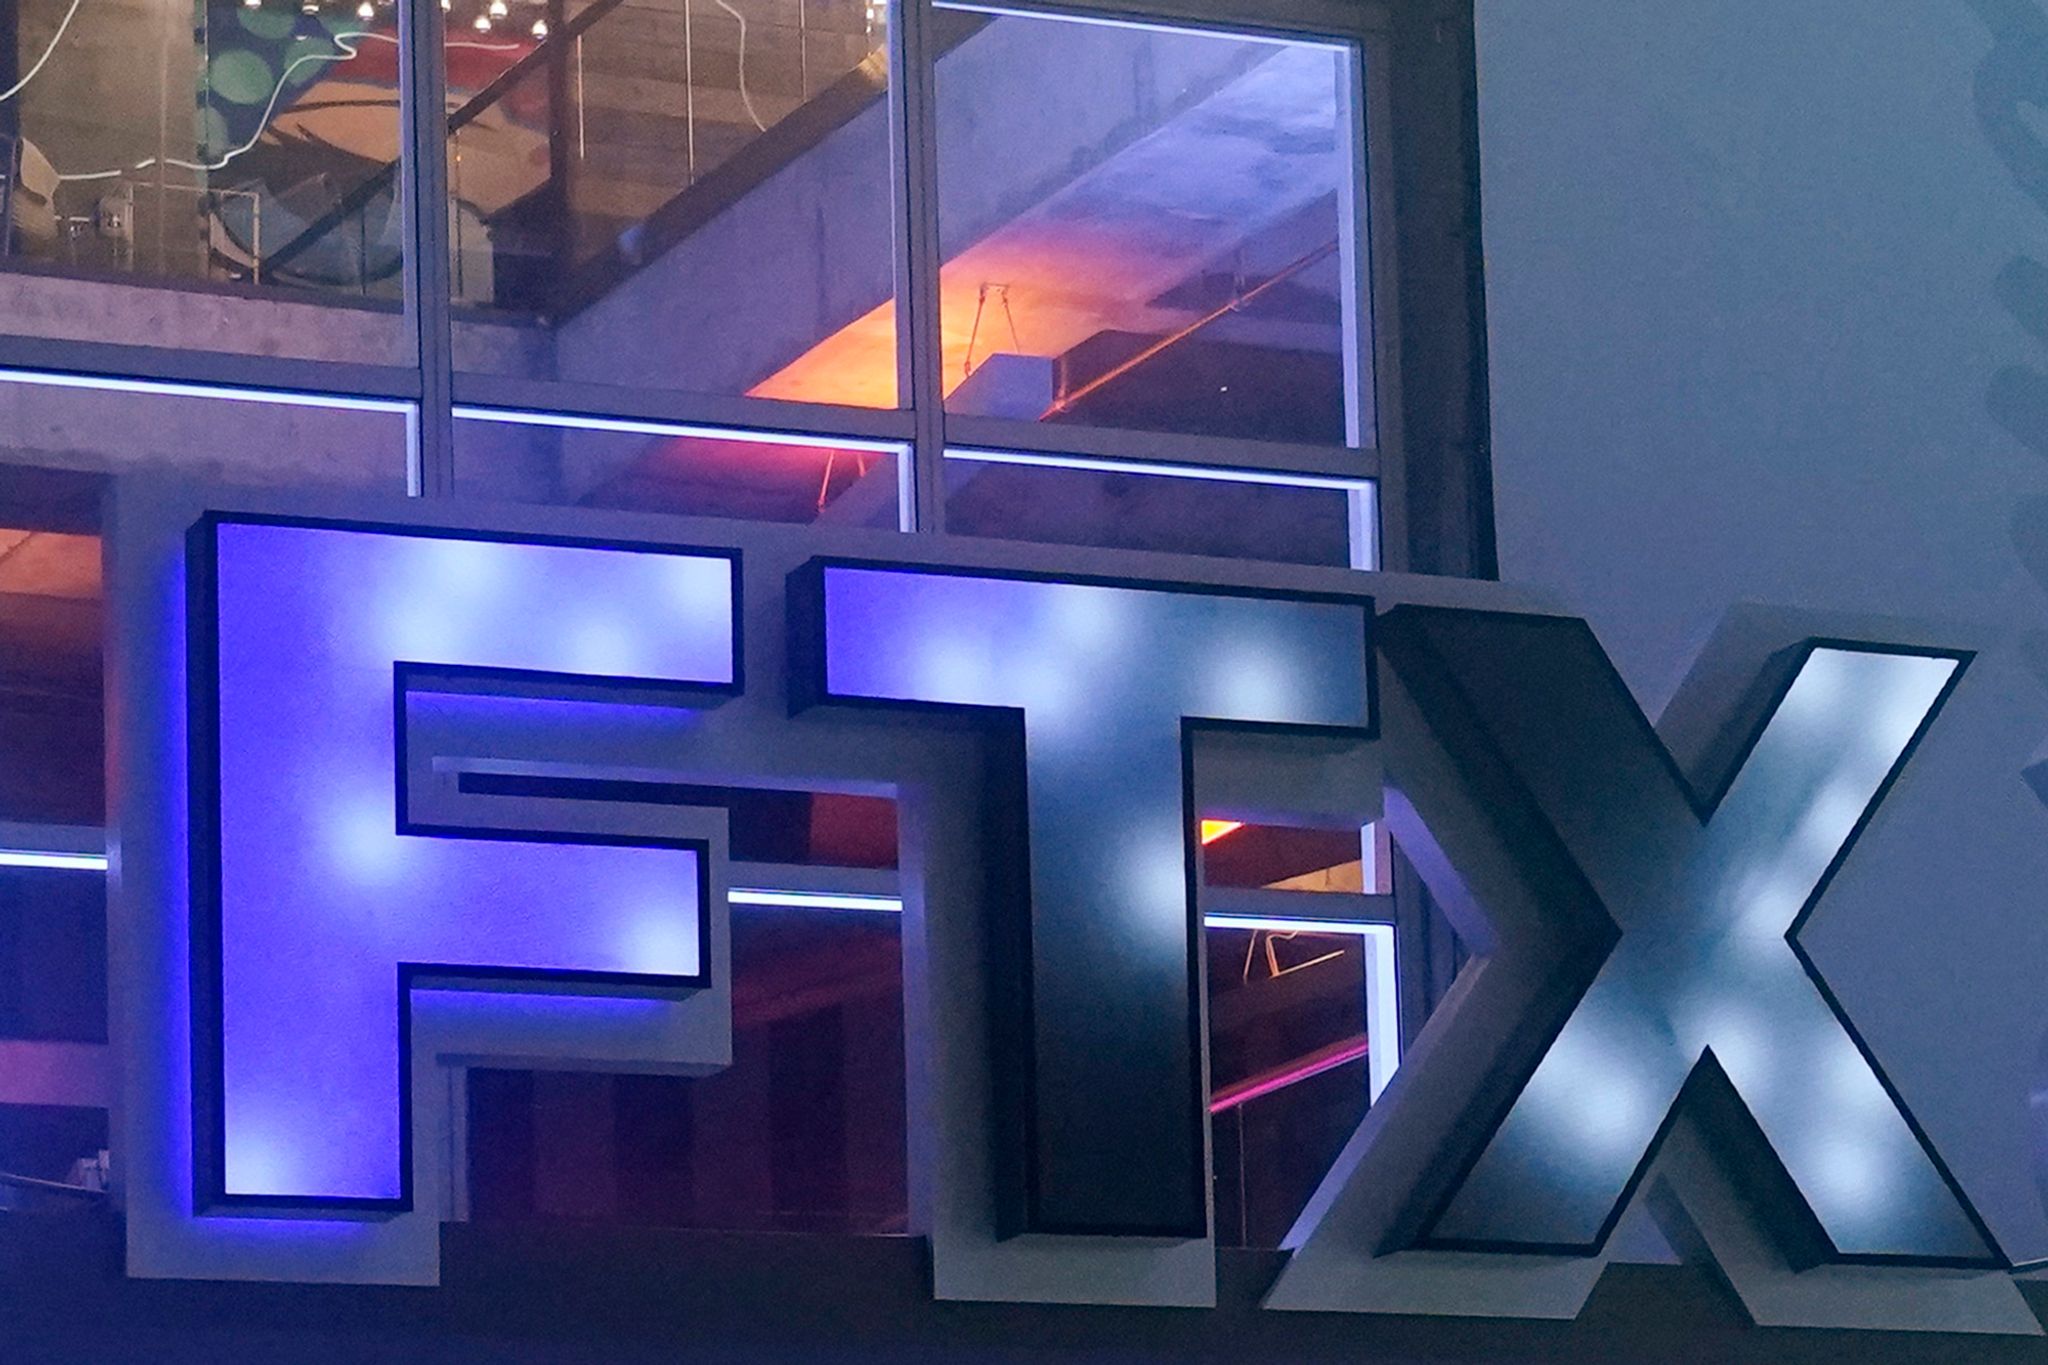 Sammelklage gegen Kryptobörse FTX eingereicht